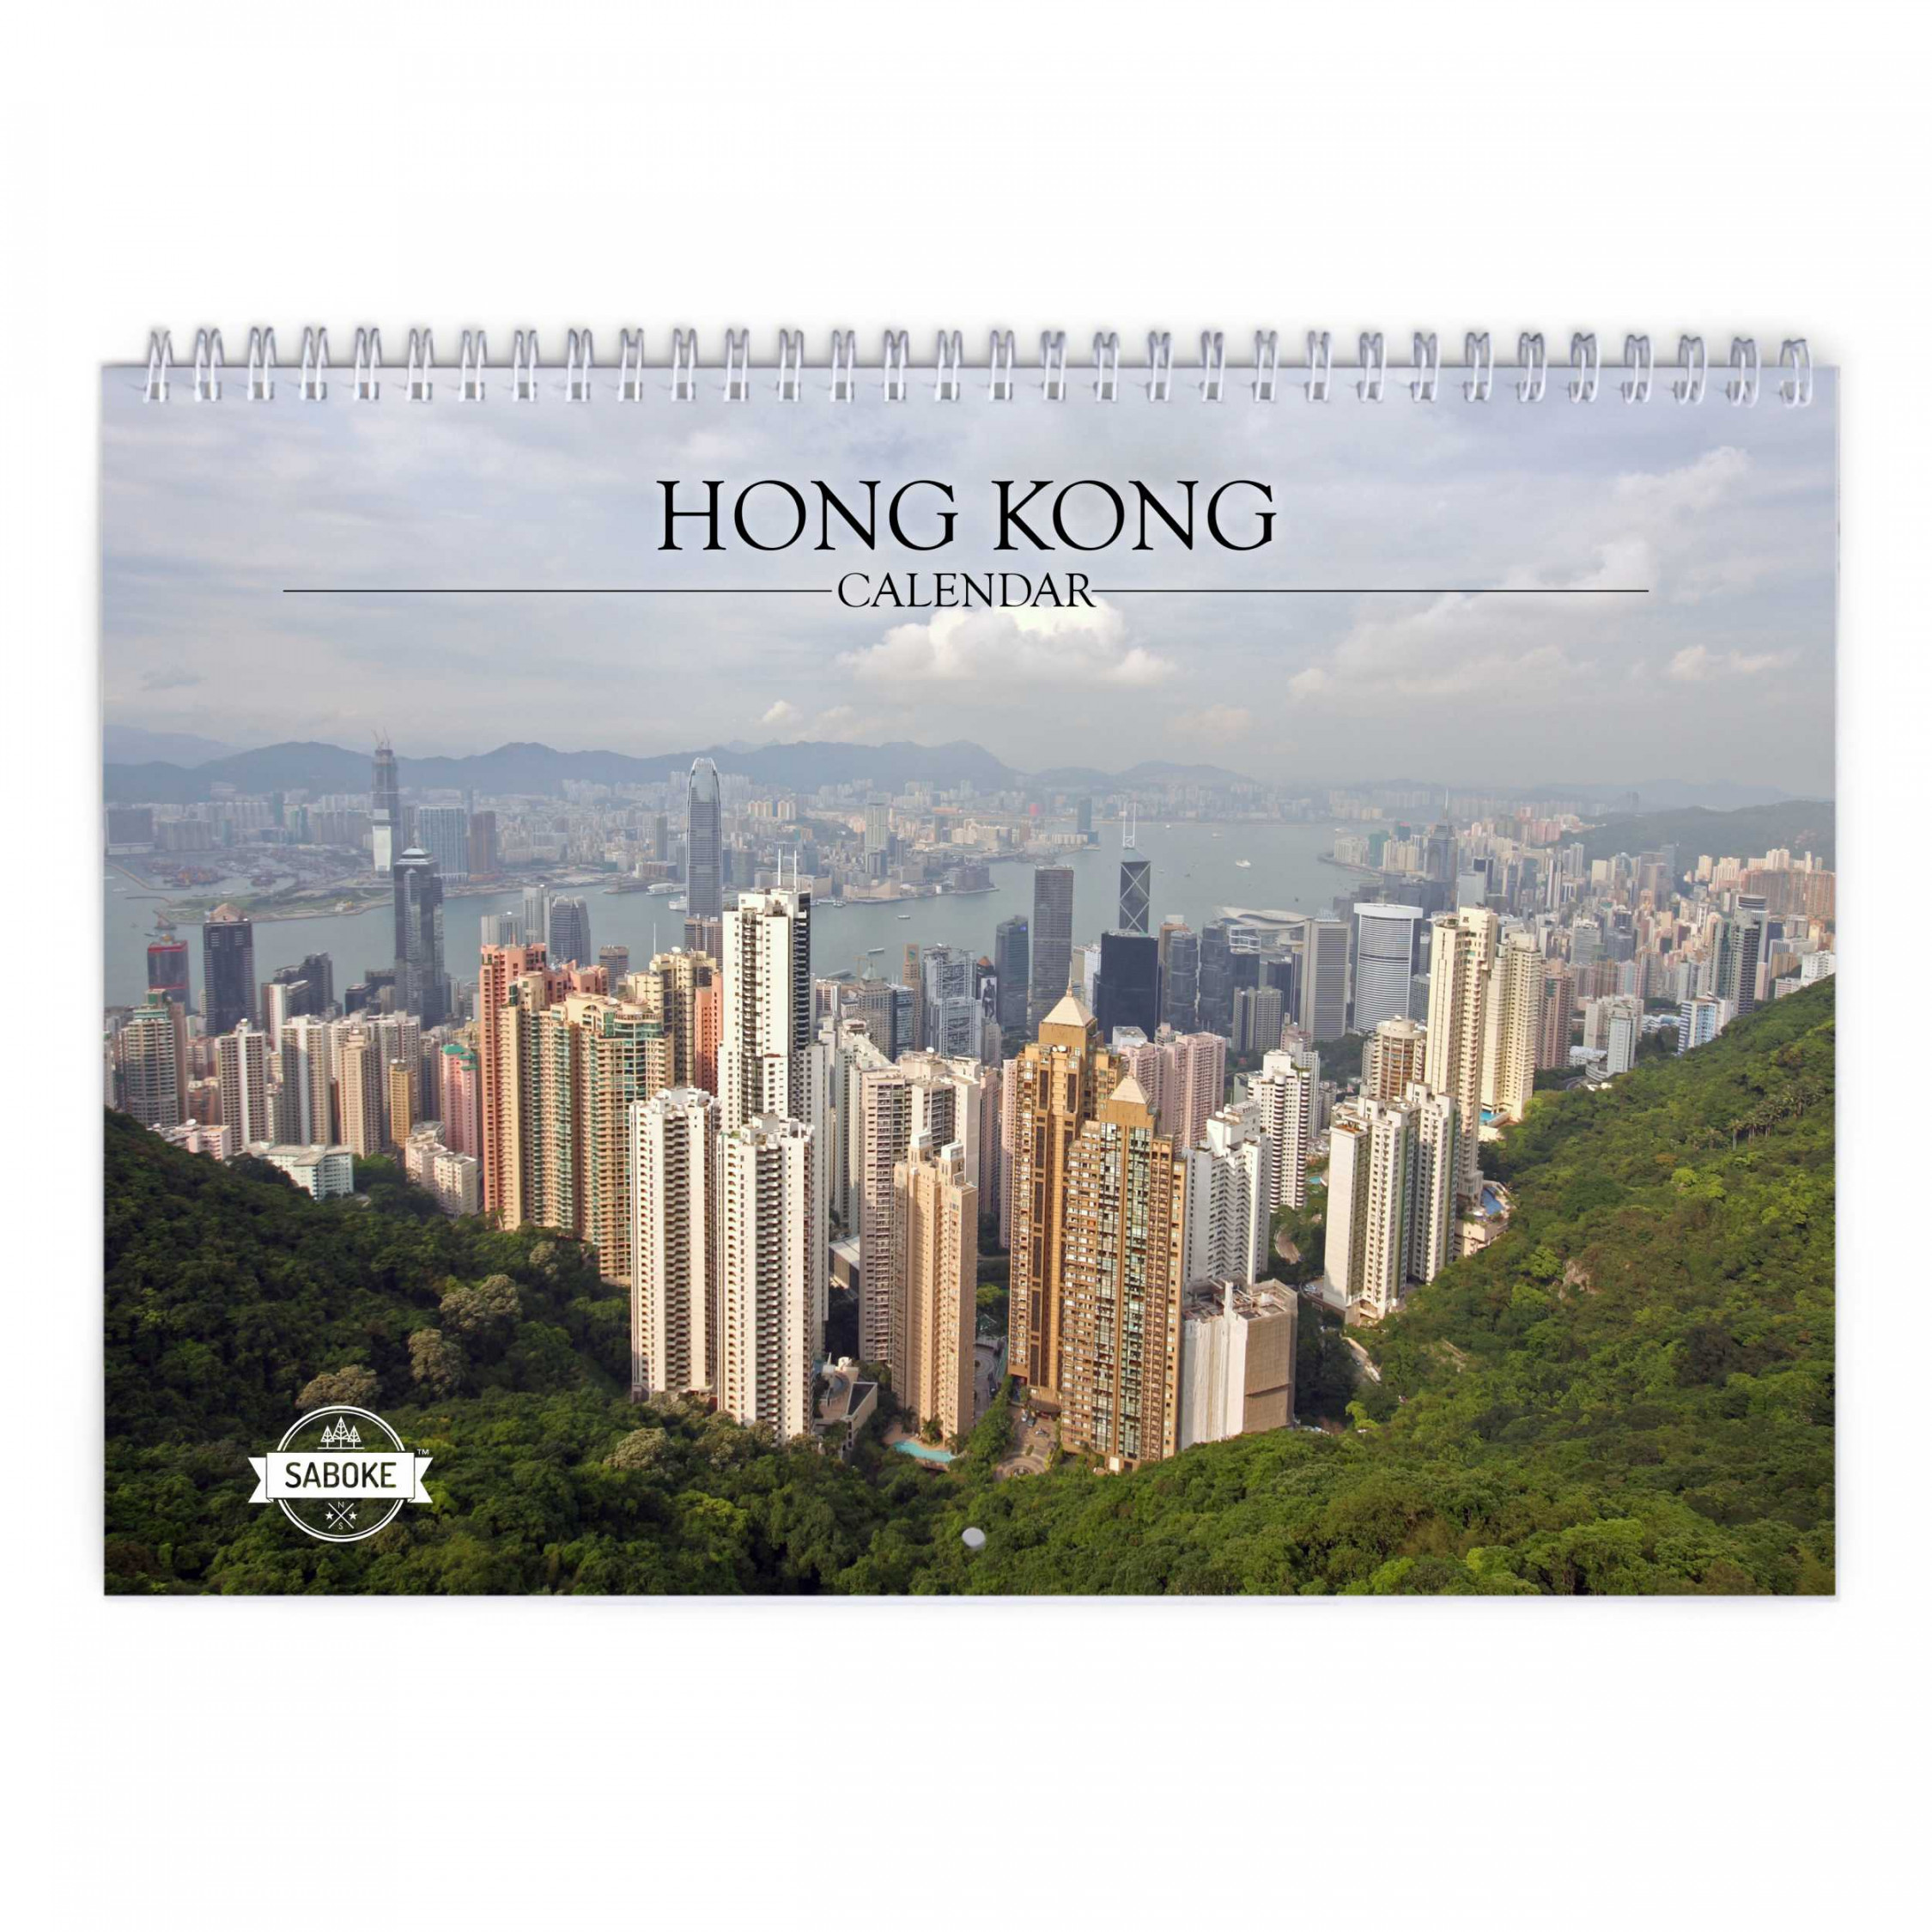 Hong Kong  Wall Calendar  eBay